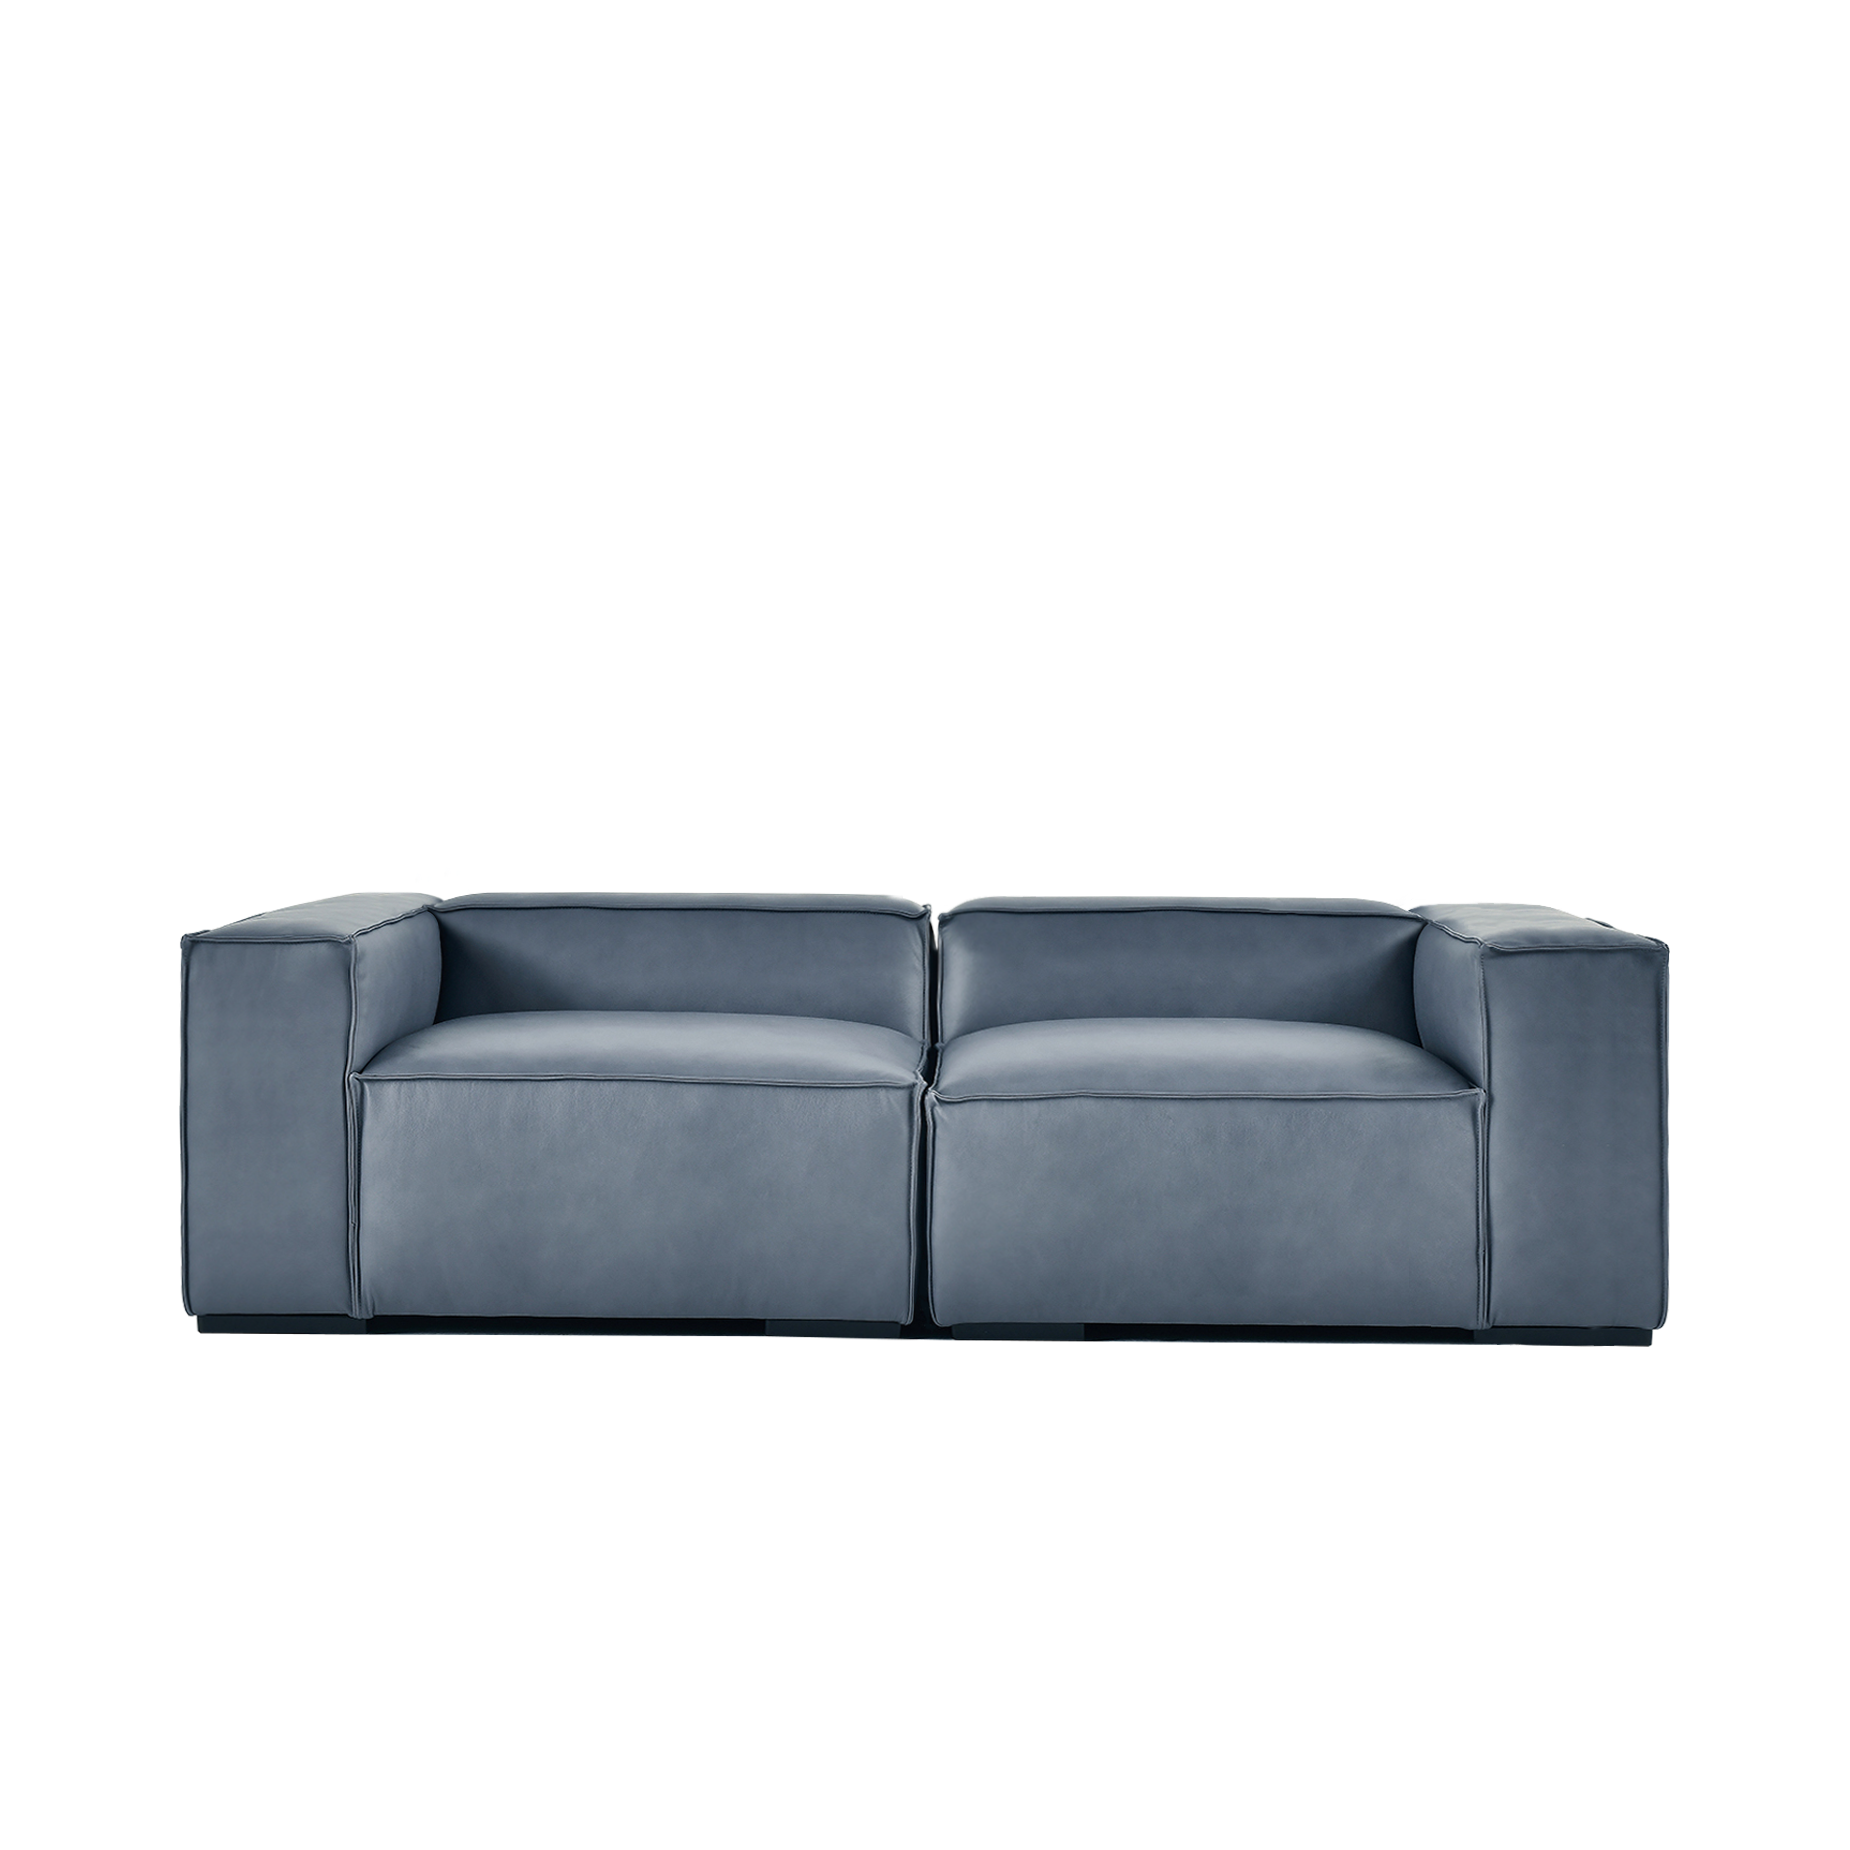 (주)도이치 DOICH ®    PEN16 modular sofa 도이치 펜16 3인 모듈소파  [4주 주문제작]